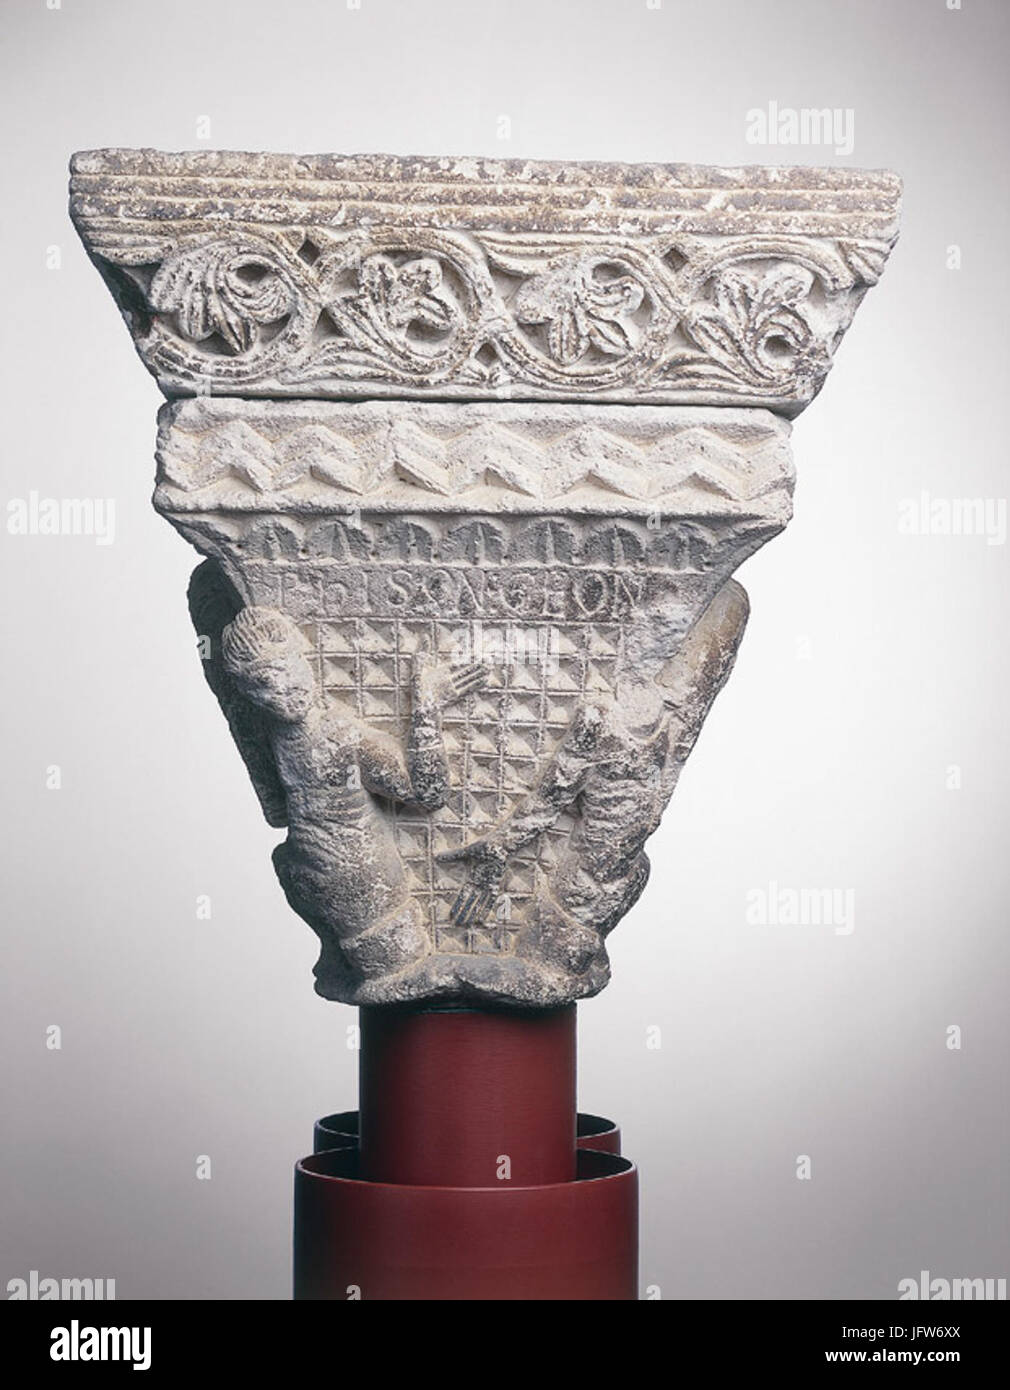 Anonyme toulousain - Chapiteau de colonnes jumelles , les quatre fleuves du paradis - Musée des Augustins - MOI 157 (3) Banque D'Images